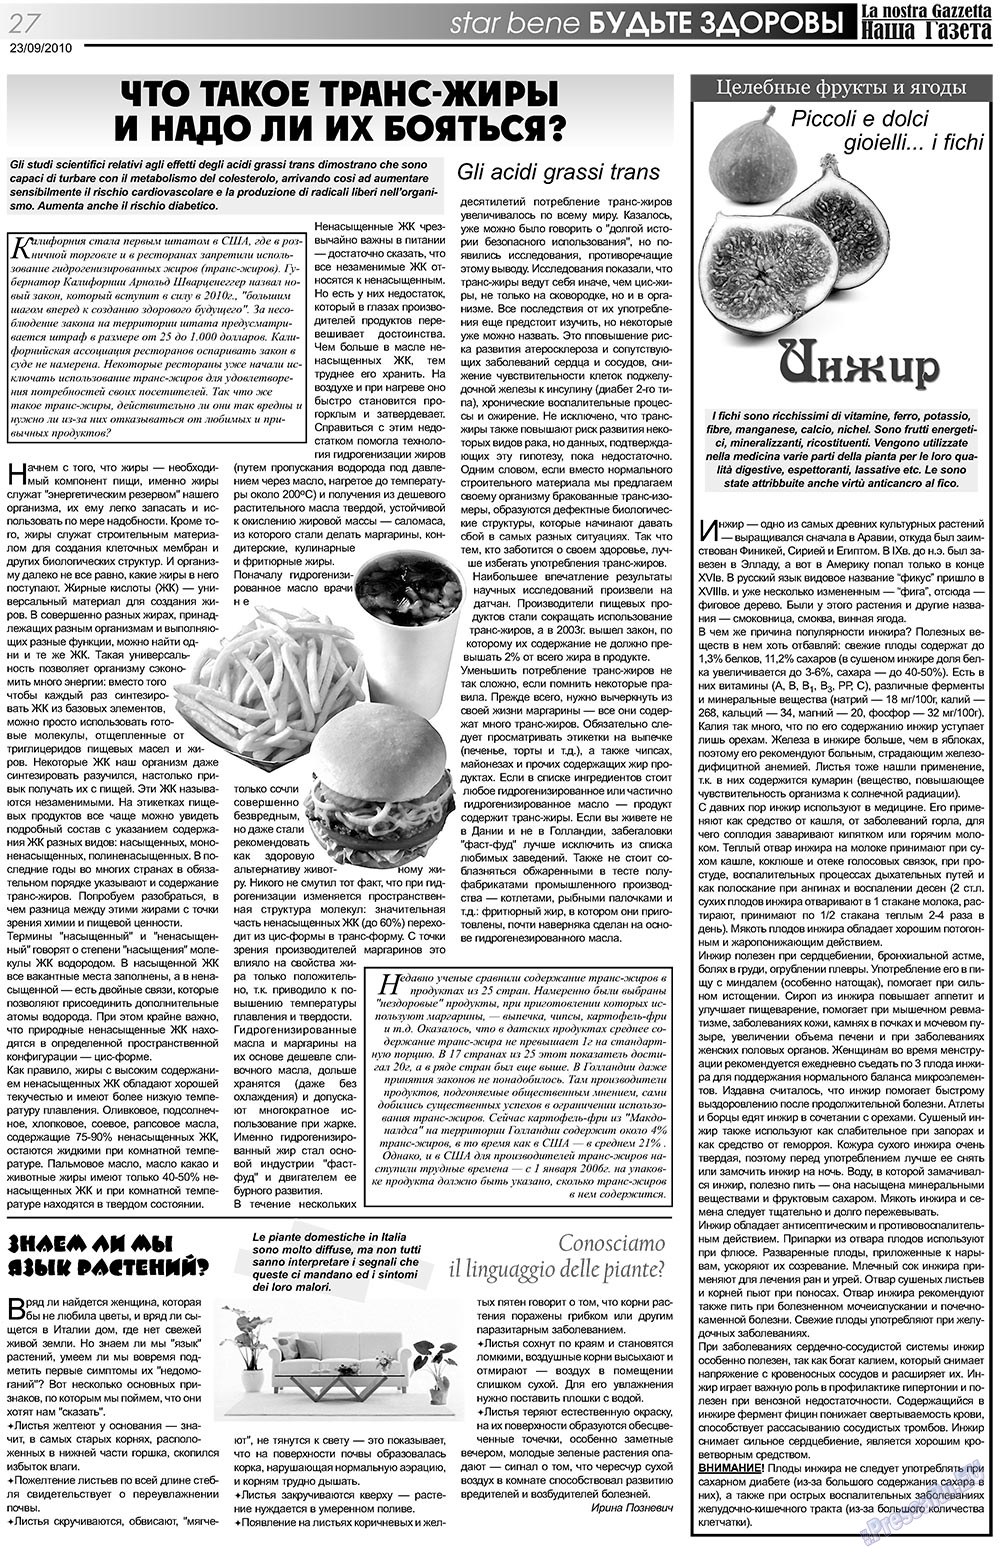 Наша Газета Италия, газета. 2010 №117 стр.27